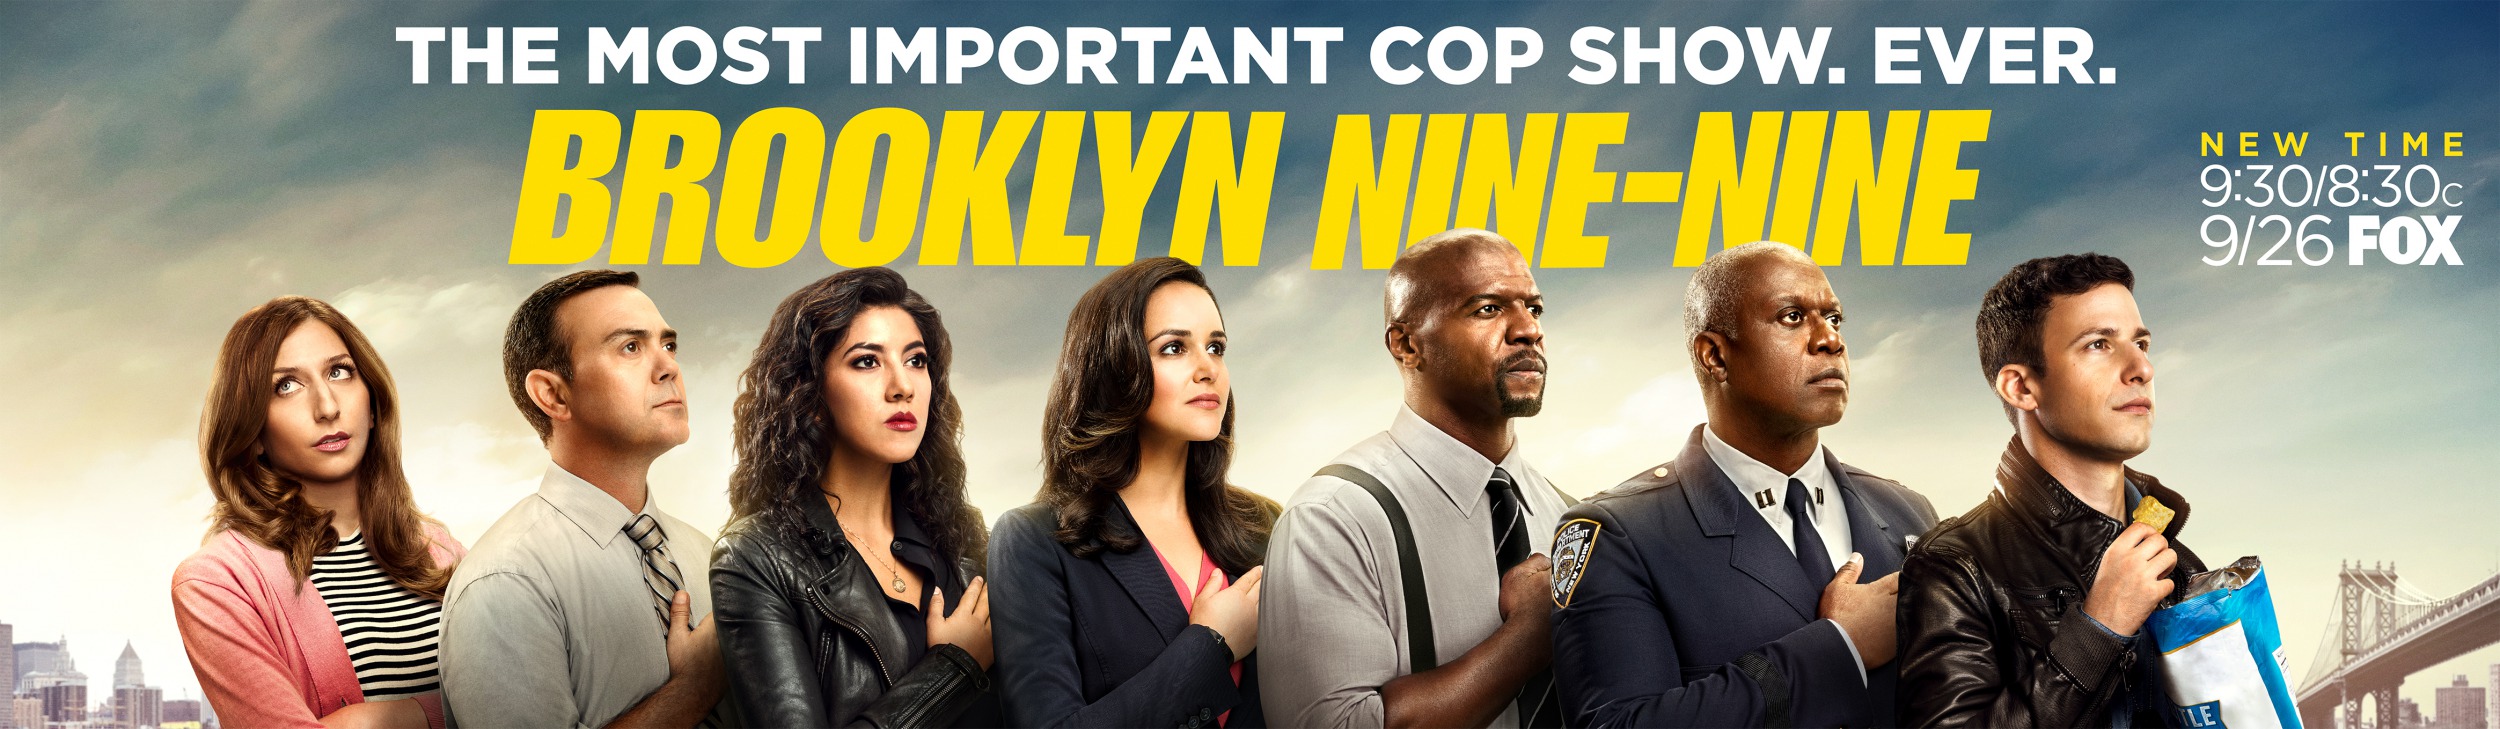 Mega Sized TV Poster Image for Brooklyn Nine-Nine (#8 of 11)